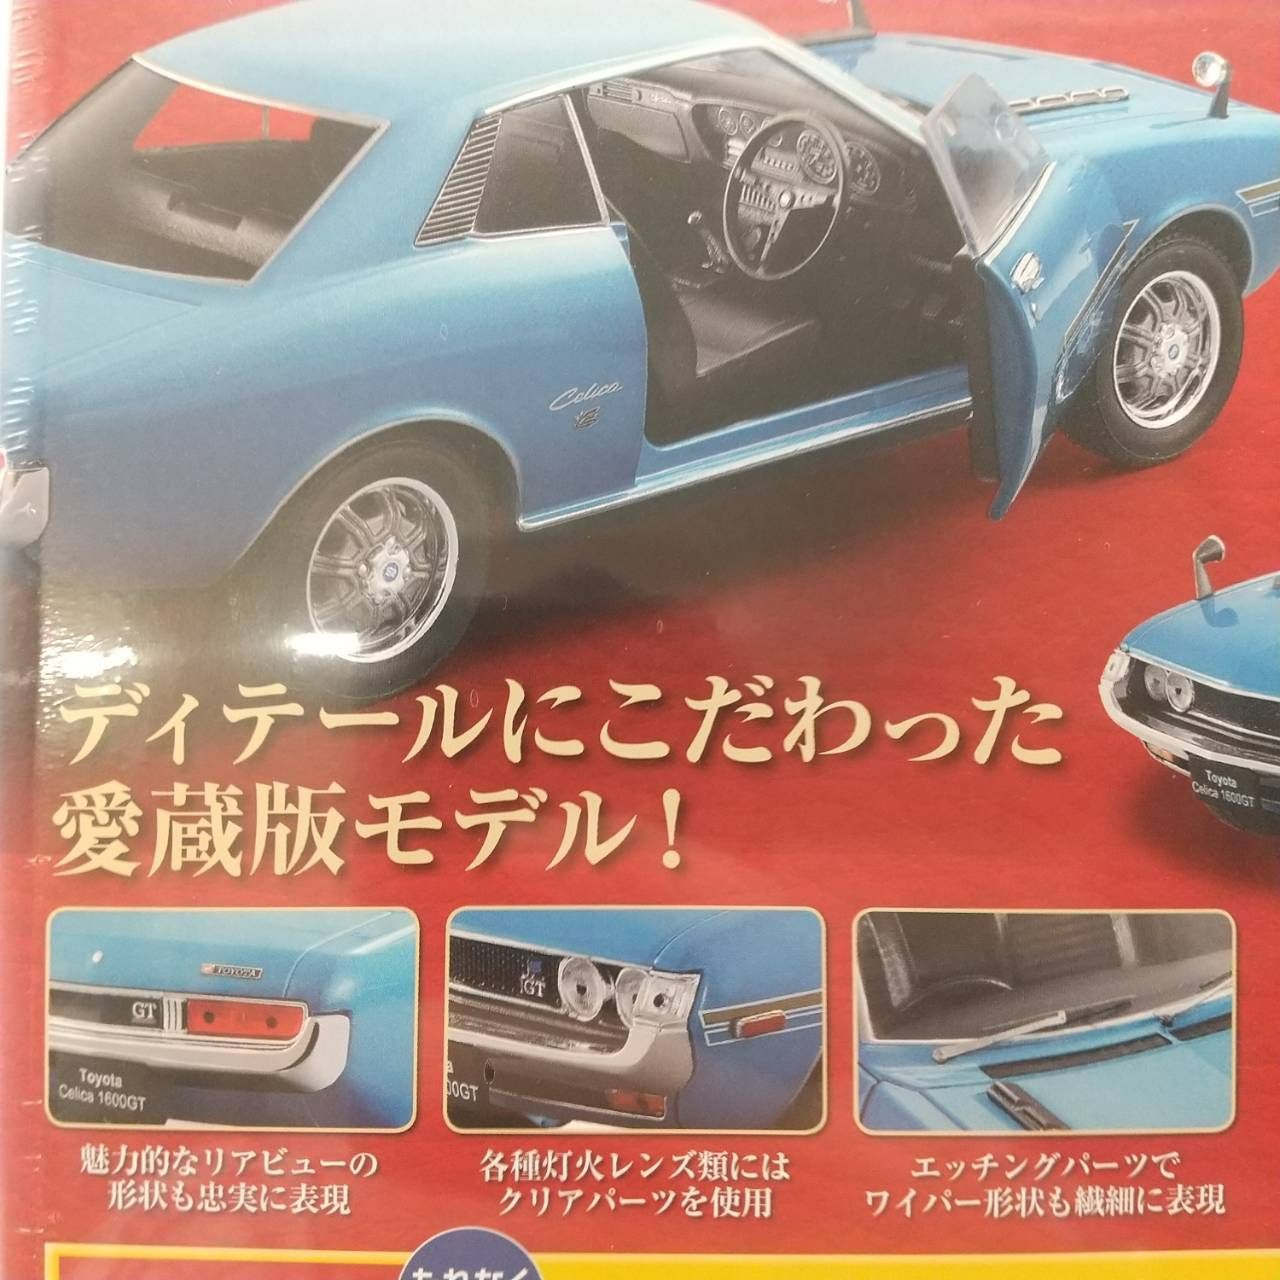 国産名車コレクション vol. 07 1/24 トヨタ セリカ 1600GT 1970